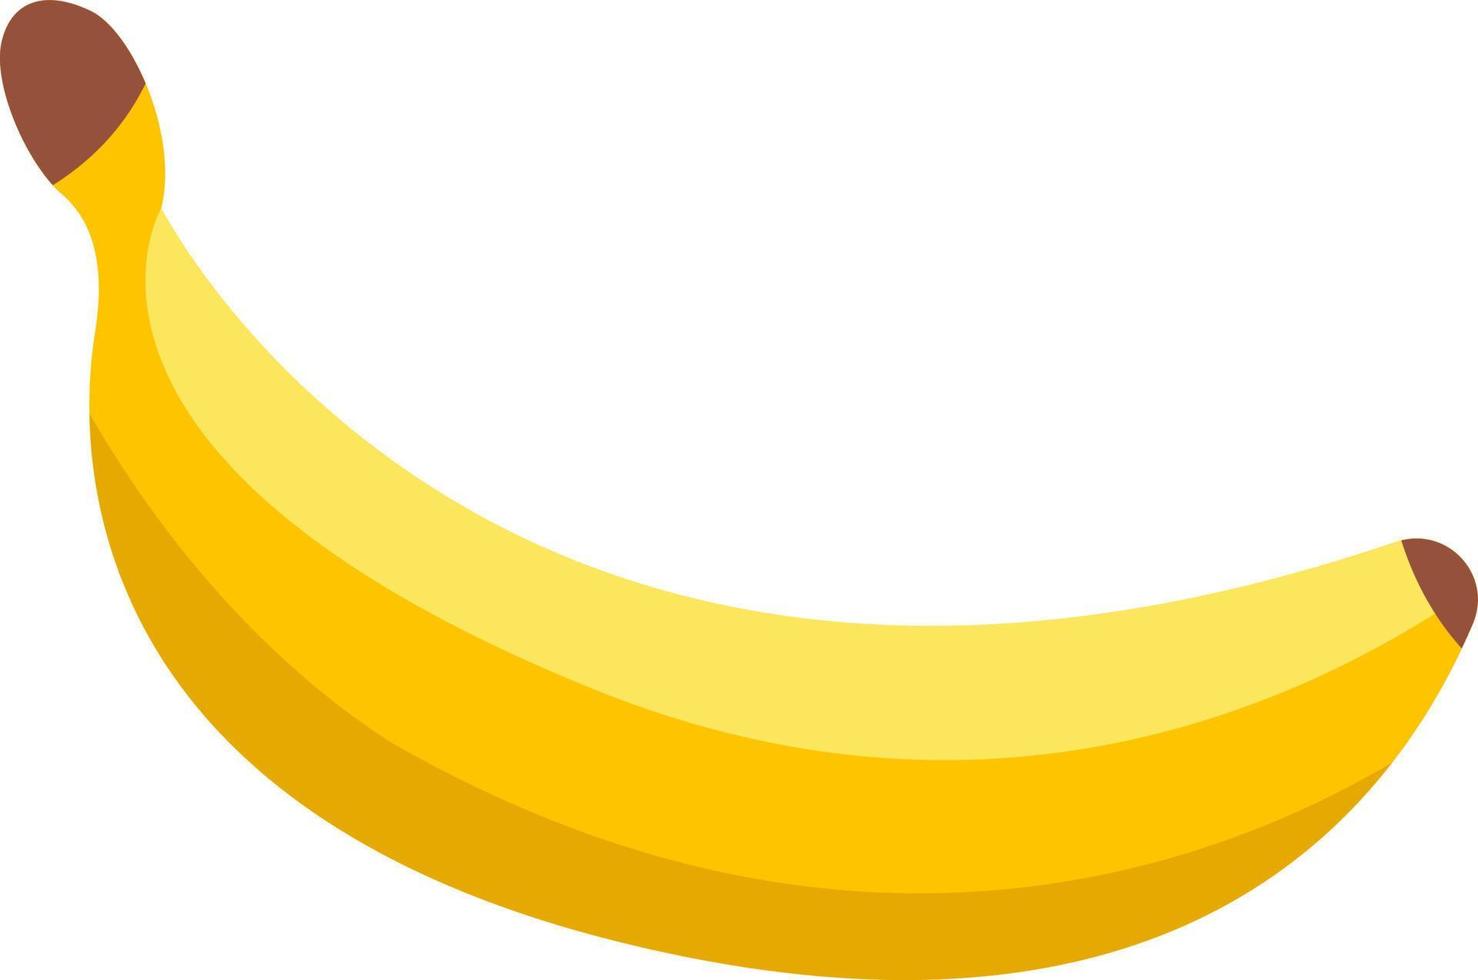 banan är en gul frukt. vektor